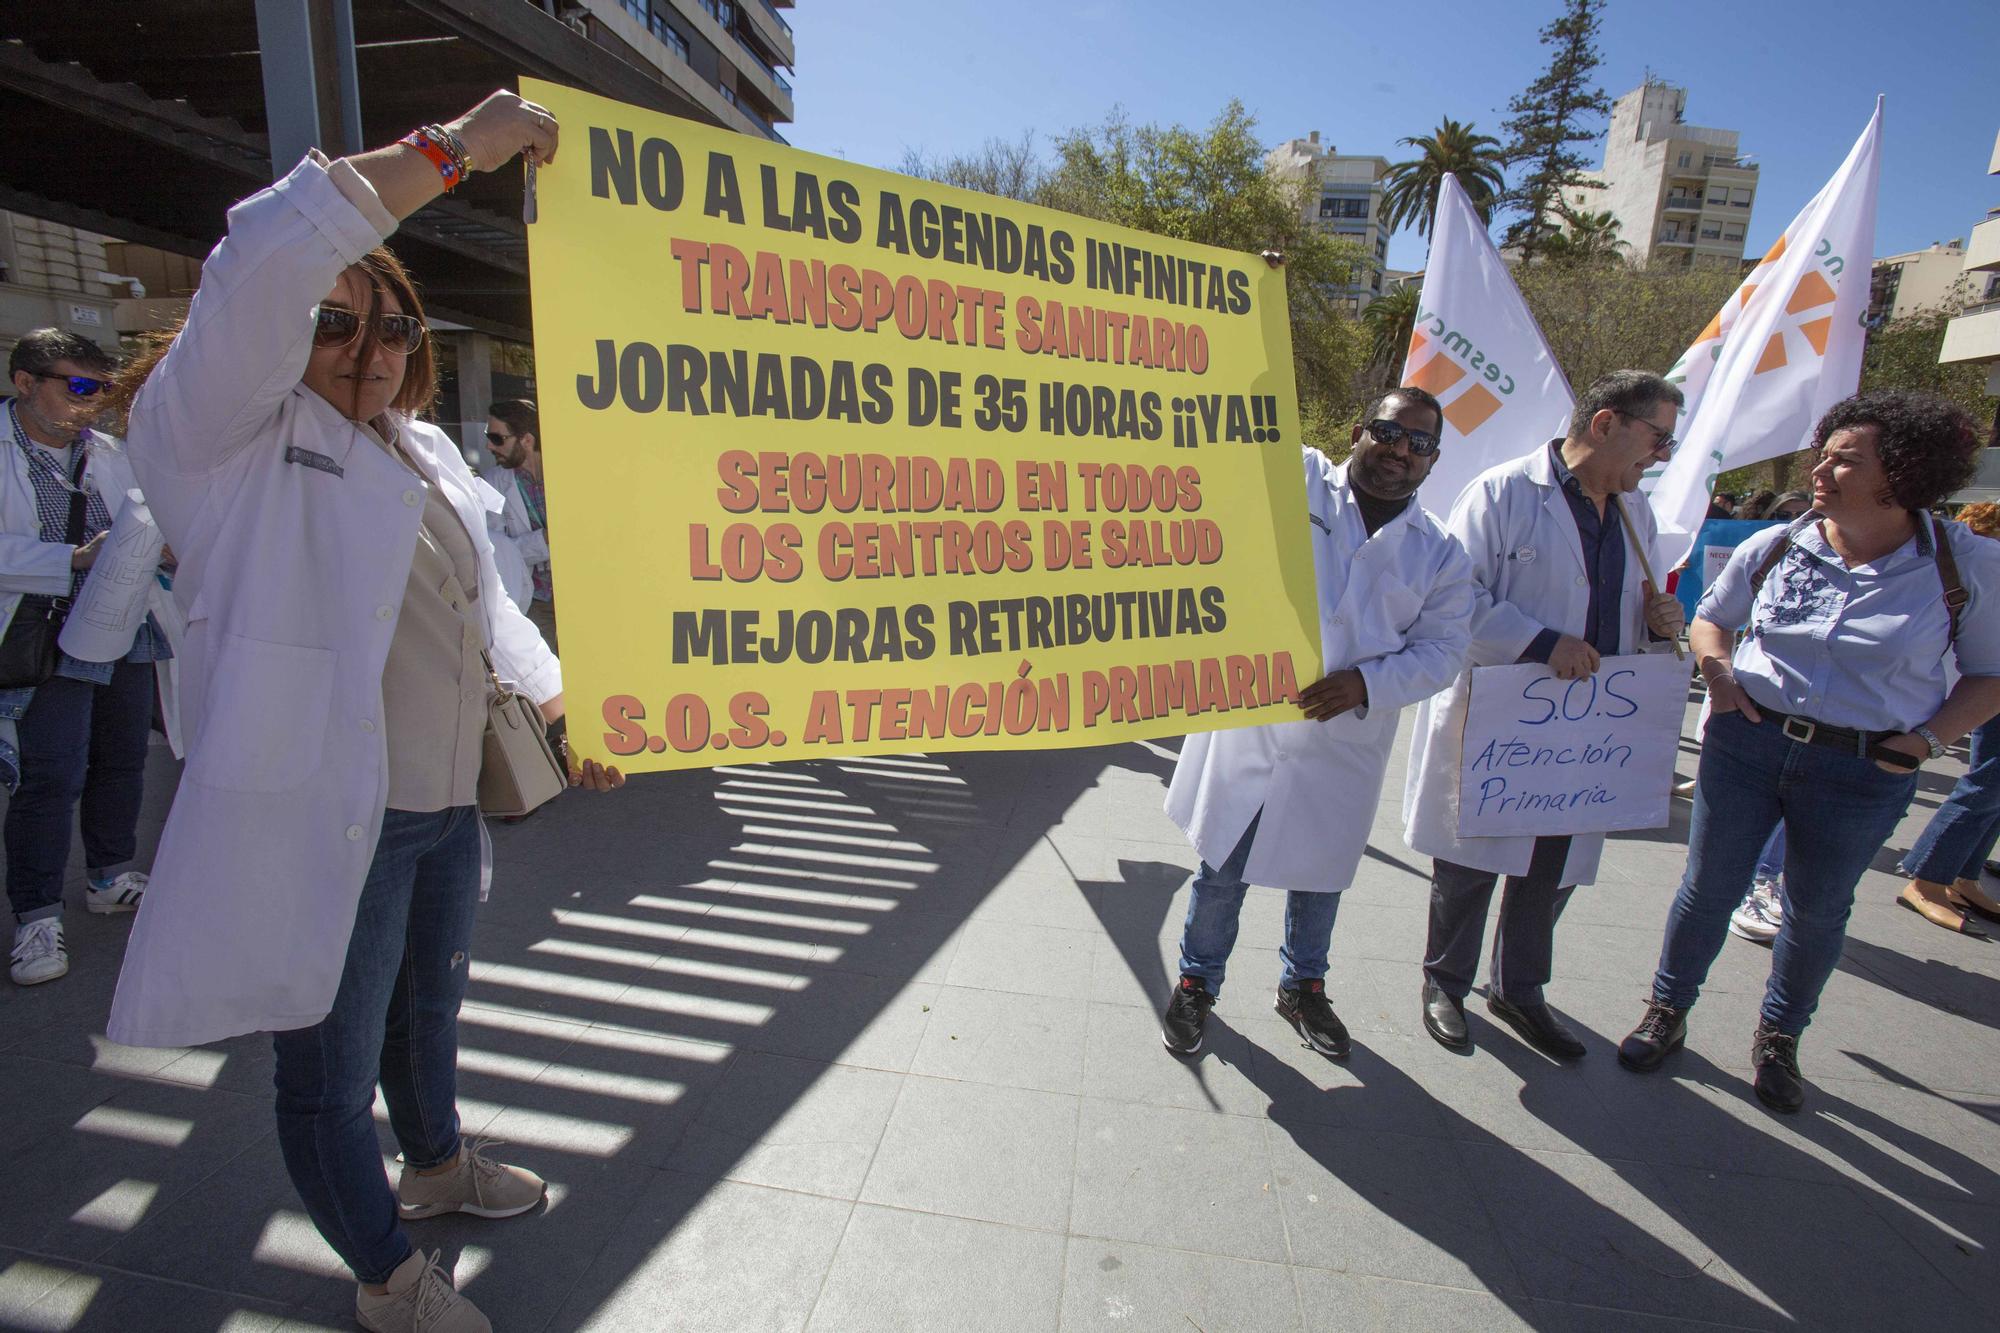 Los médicos de Primaria se suman en mayor número a la huelga que los de hospital